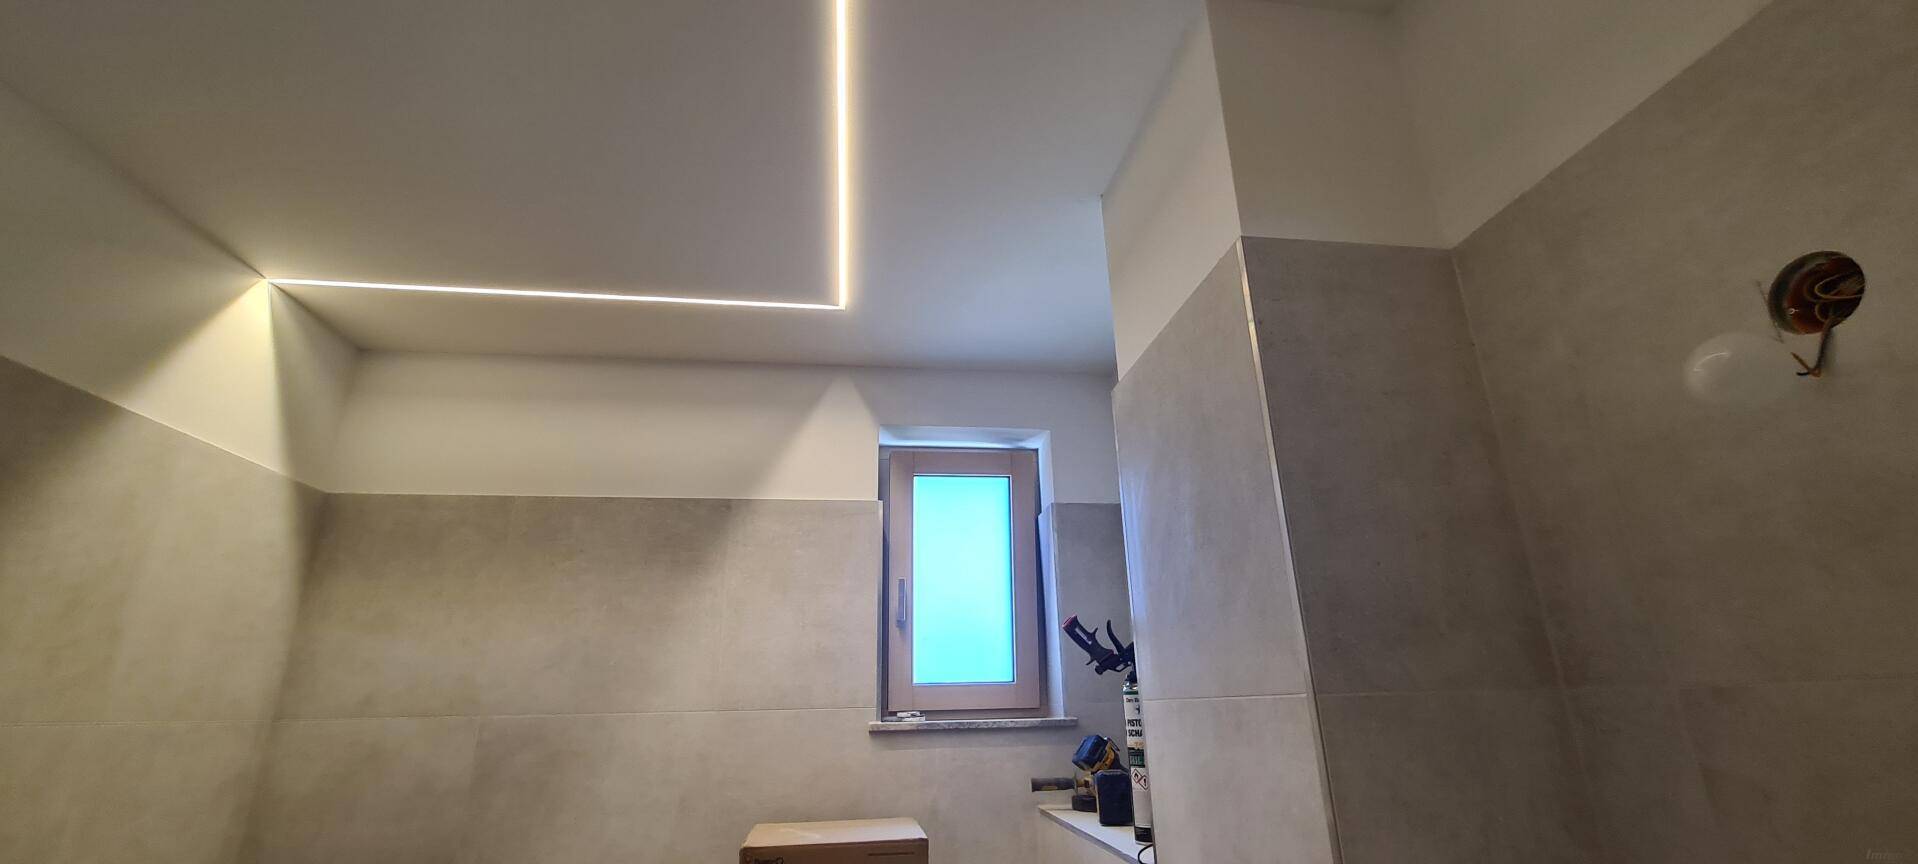 Badezimmer mit schicker Lichtleiste integriert